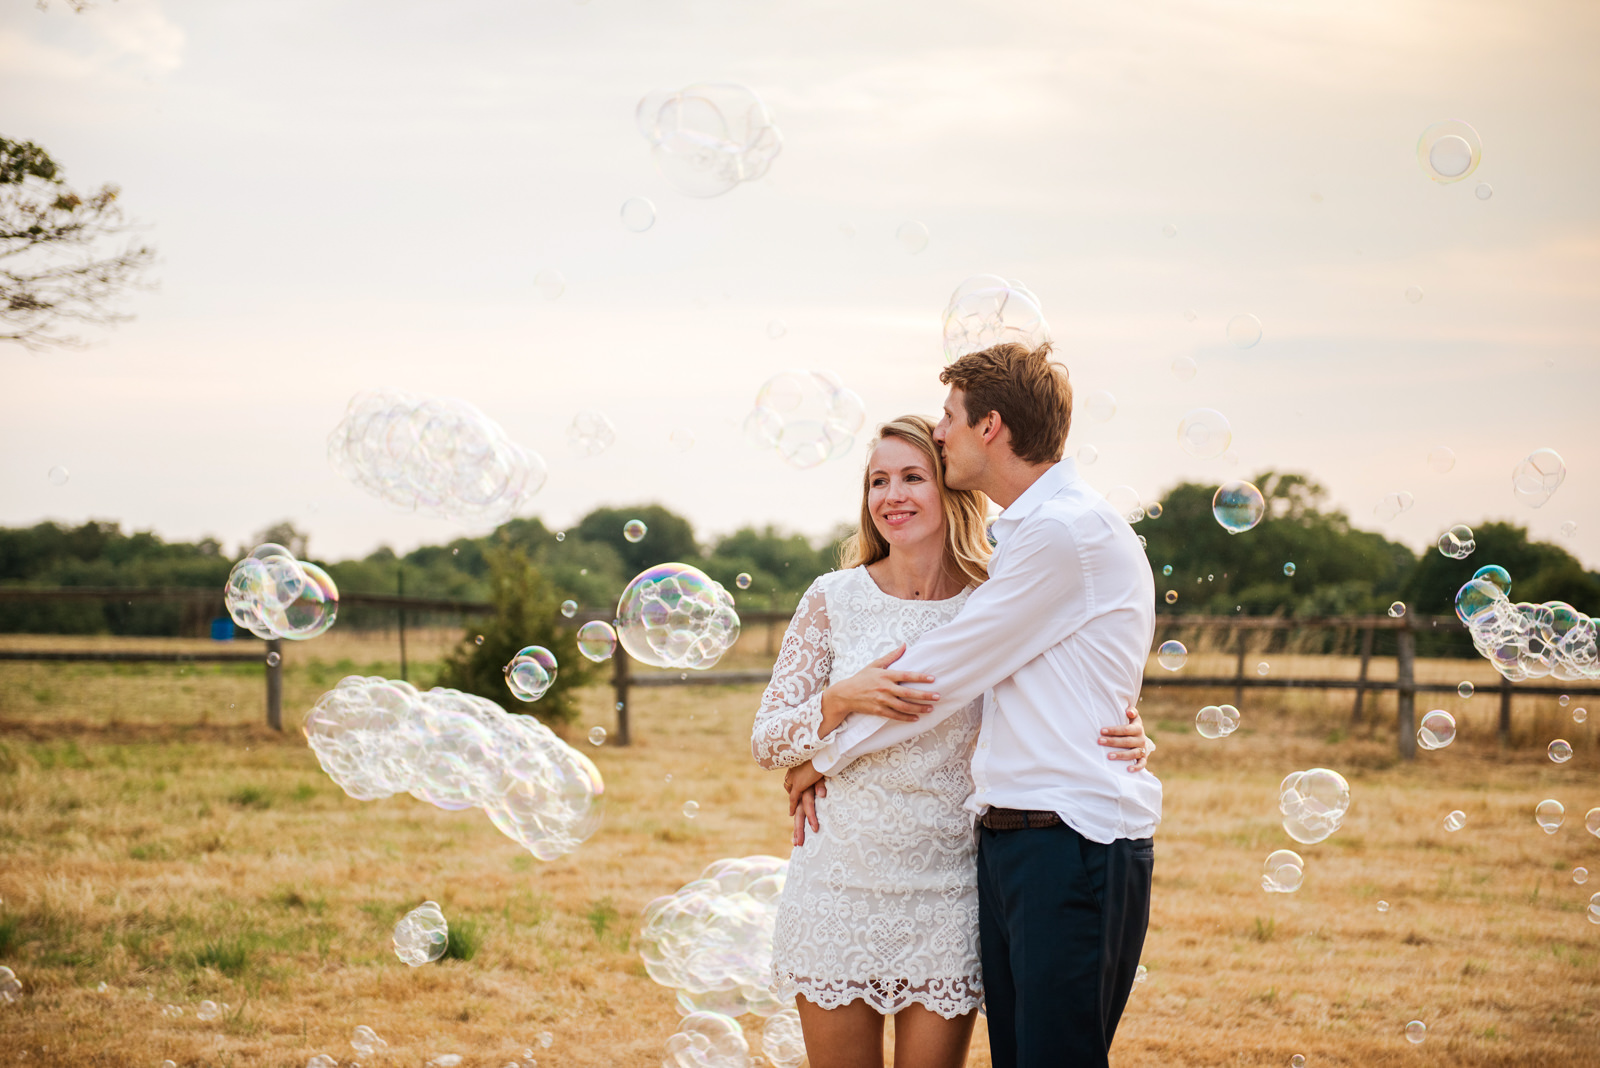 Wedding bubble fun photos